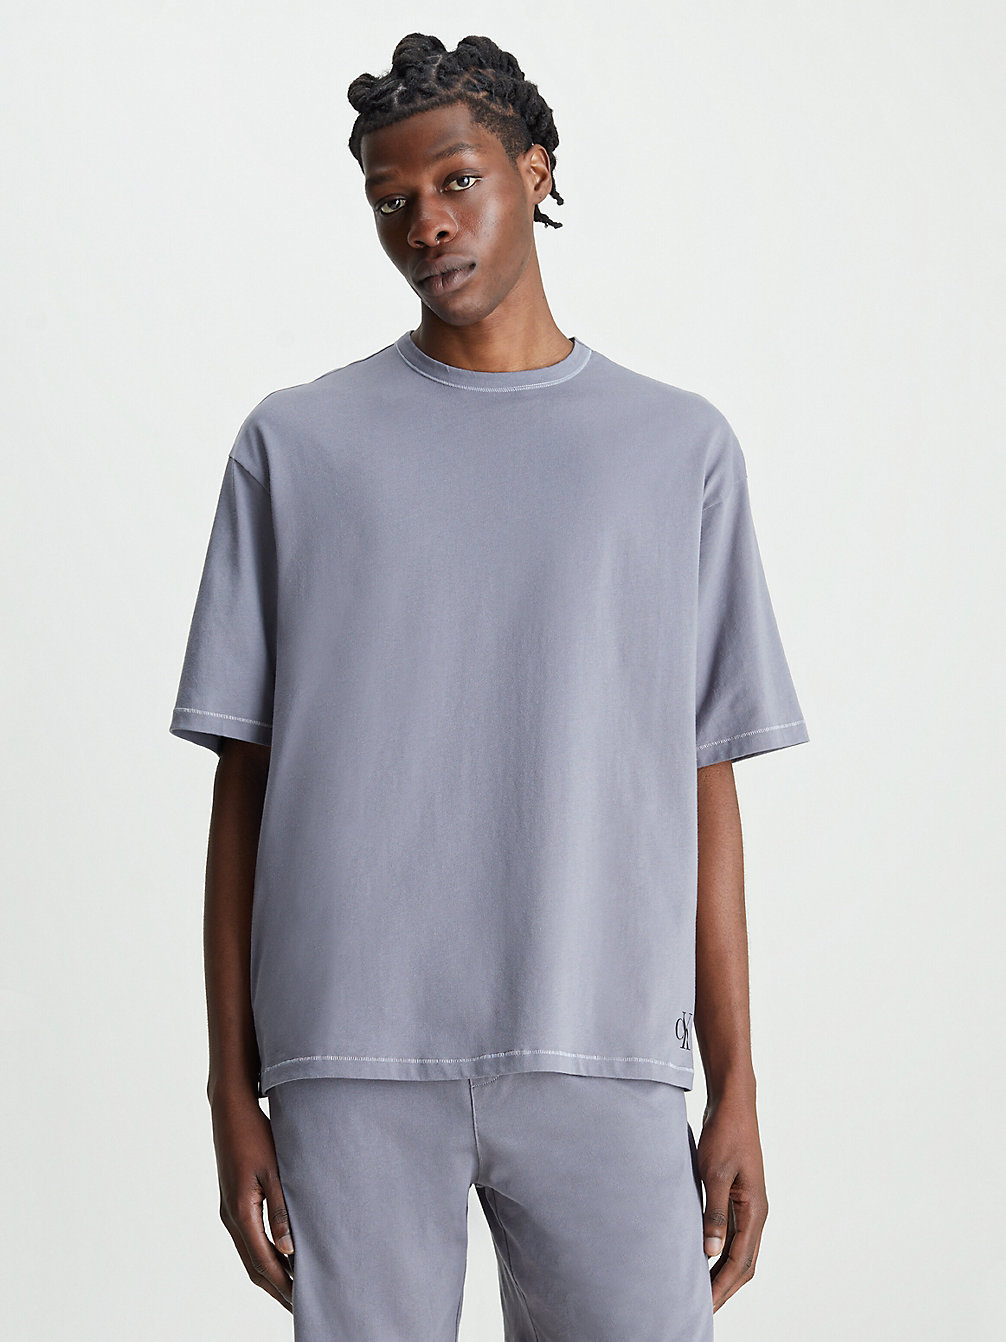 ASPHALT GREY Lounge-T-Shirt - Flex Fit undefined Herren Calvin Klein